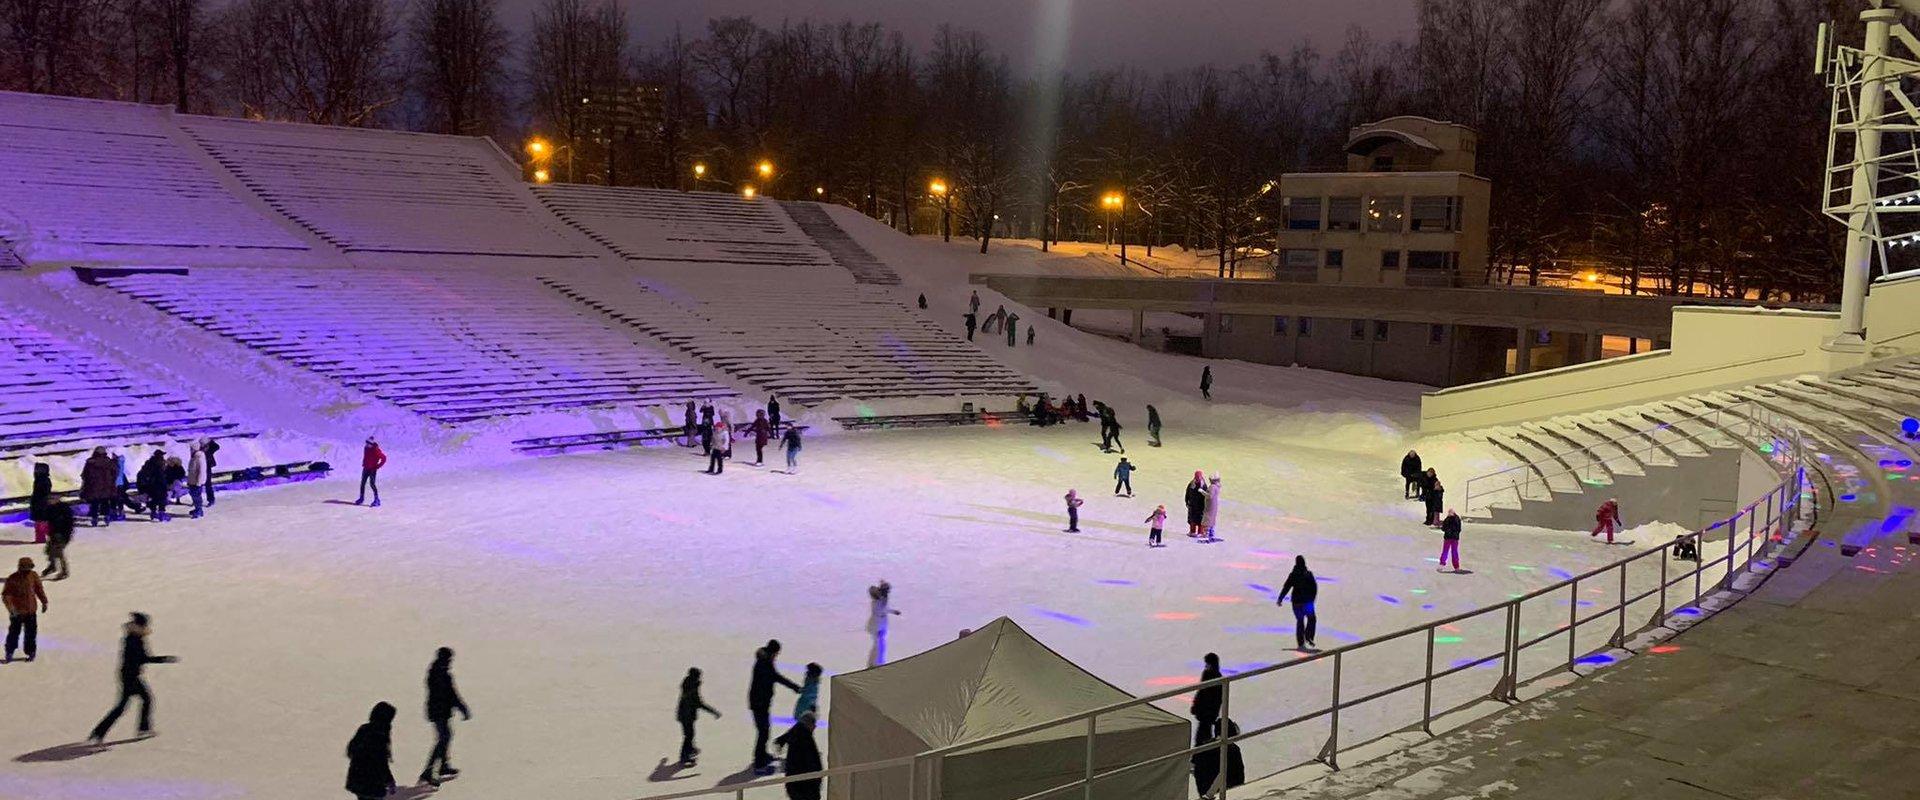 Skating rink in Tähtvere Park